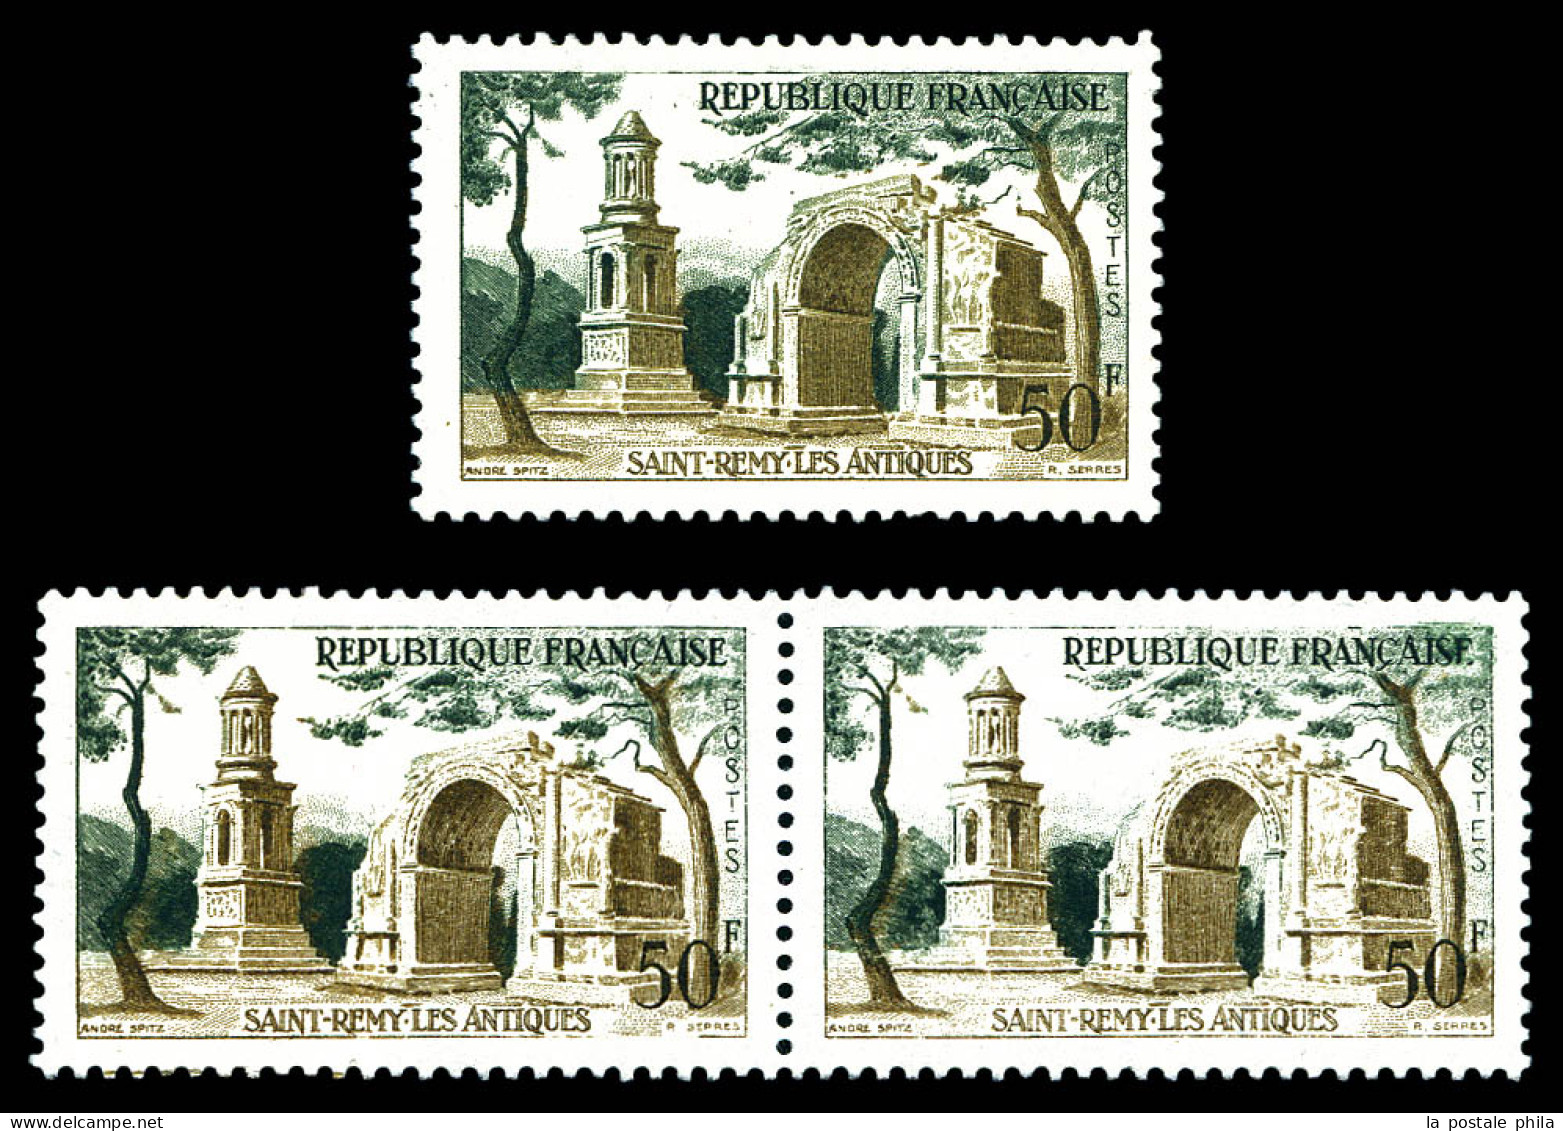 N°1130b, 50f St Rémy Les Antiques: Impression Sur Raccord En Paire + Arche Verte. SUP. R. (signé Brun/certificat)  Quali - Ungebraucht